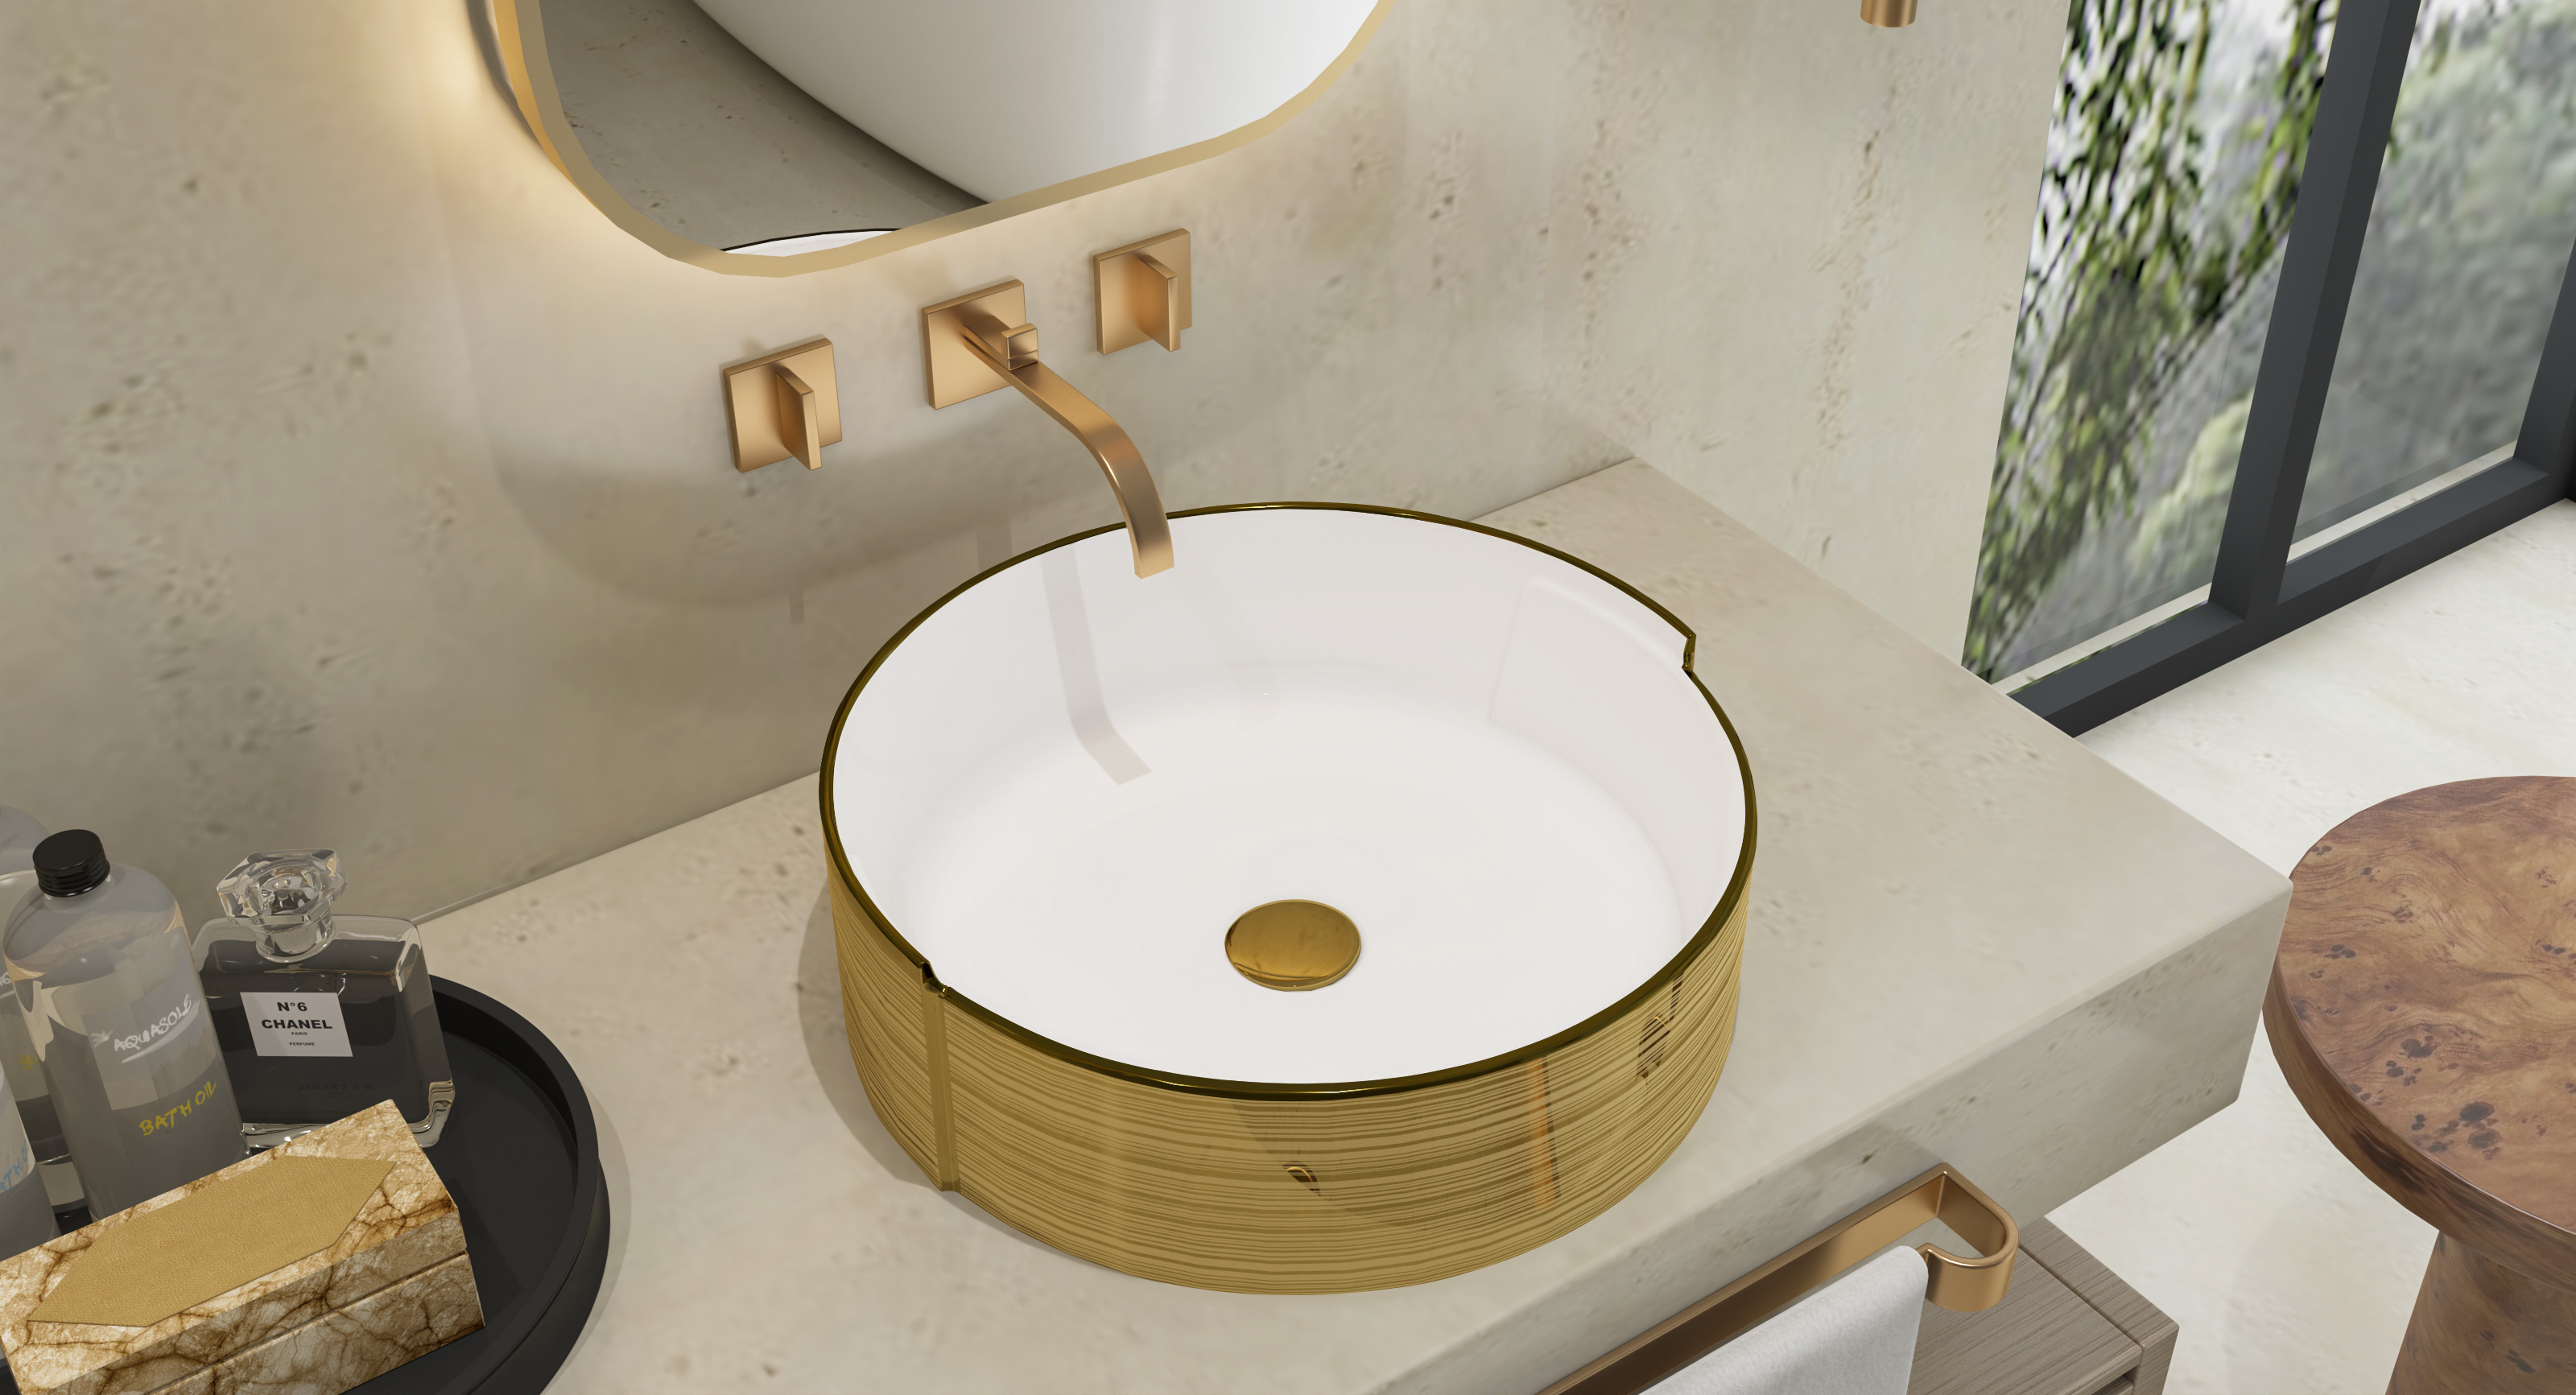 MEJE 16,75 Pouces LUXURY GOLD Stripes Round Art Basin, Lavabo de salle de bain au-dessus du comptoir, Lavabo de comptoir en céramique de porcelaine (vidange escamotable incluse)